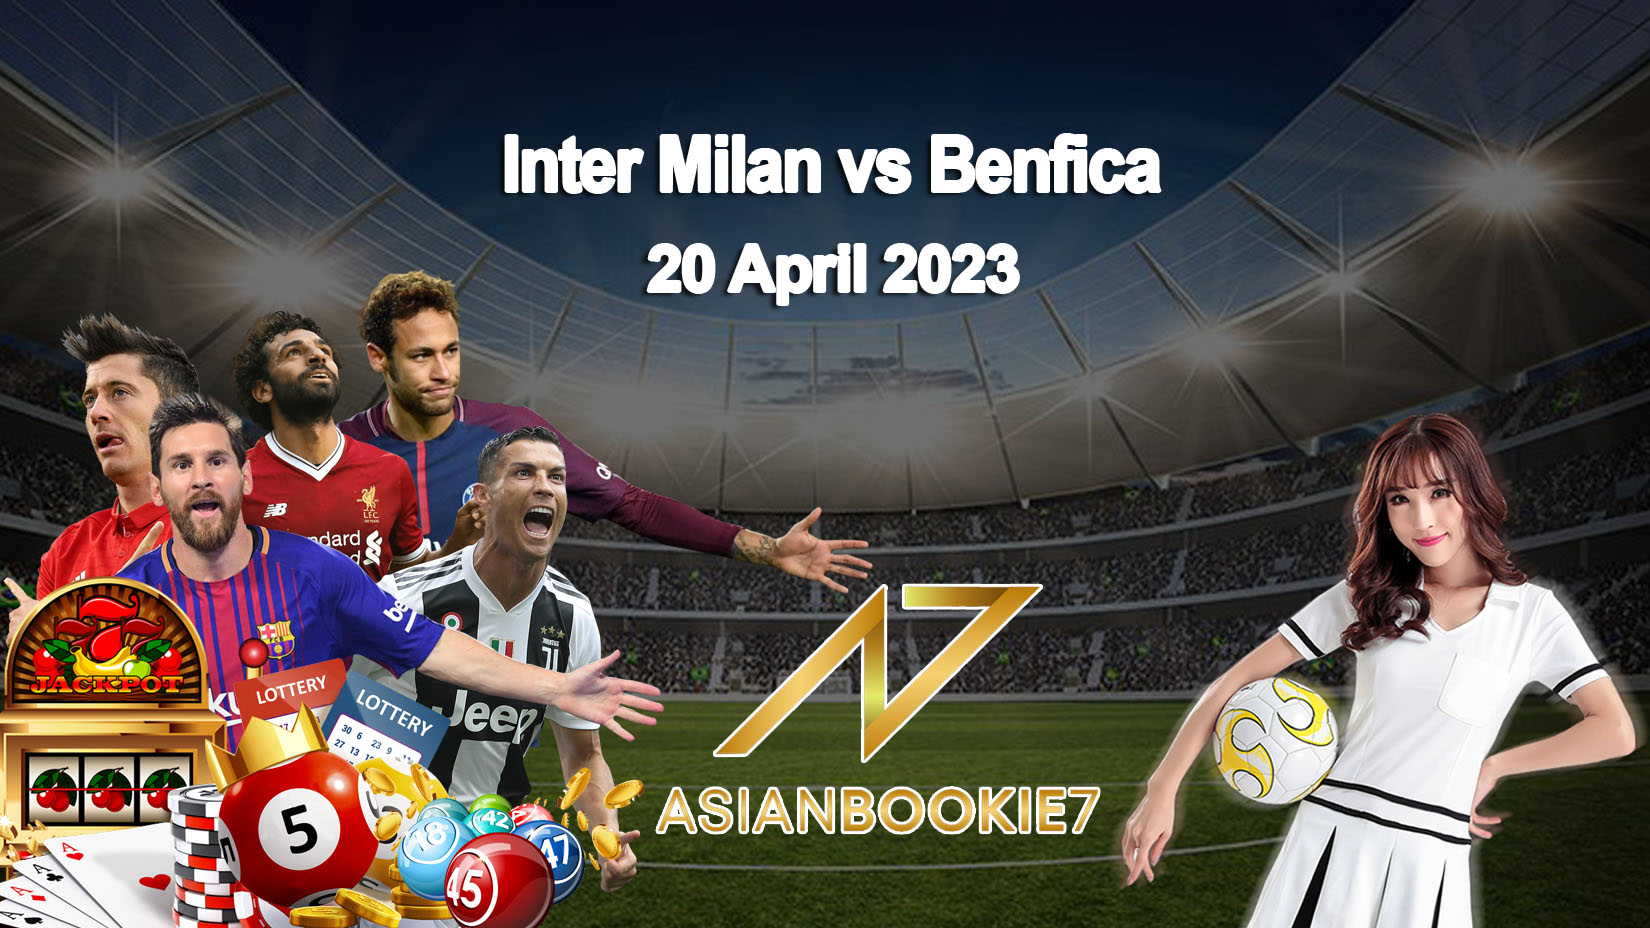 Prediksi Inter Milan vs Benfica 20 April 2023